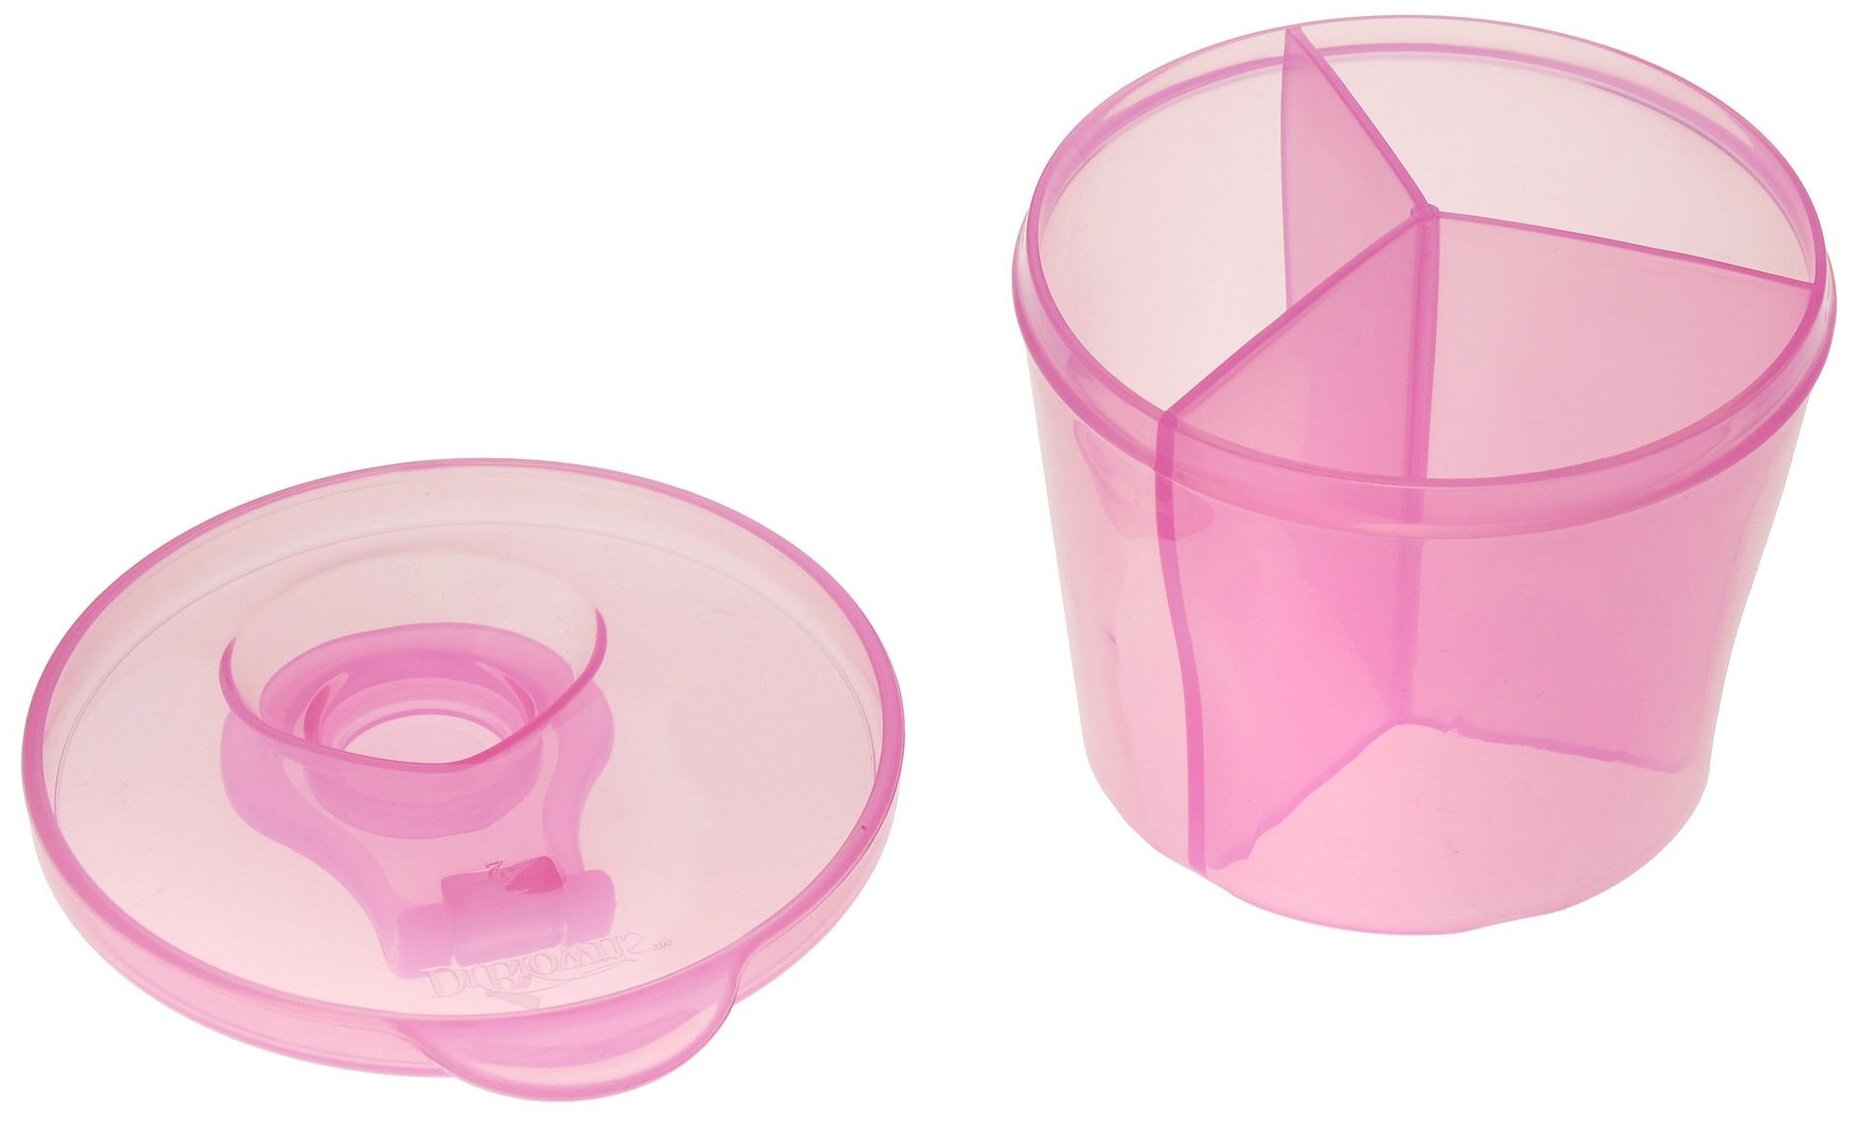 Дозатор для детской смеси Dr.Brown's сухой смеси цвет: розовый - фото №3